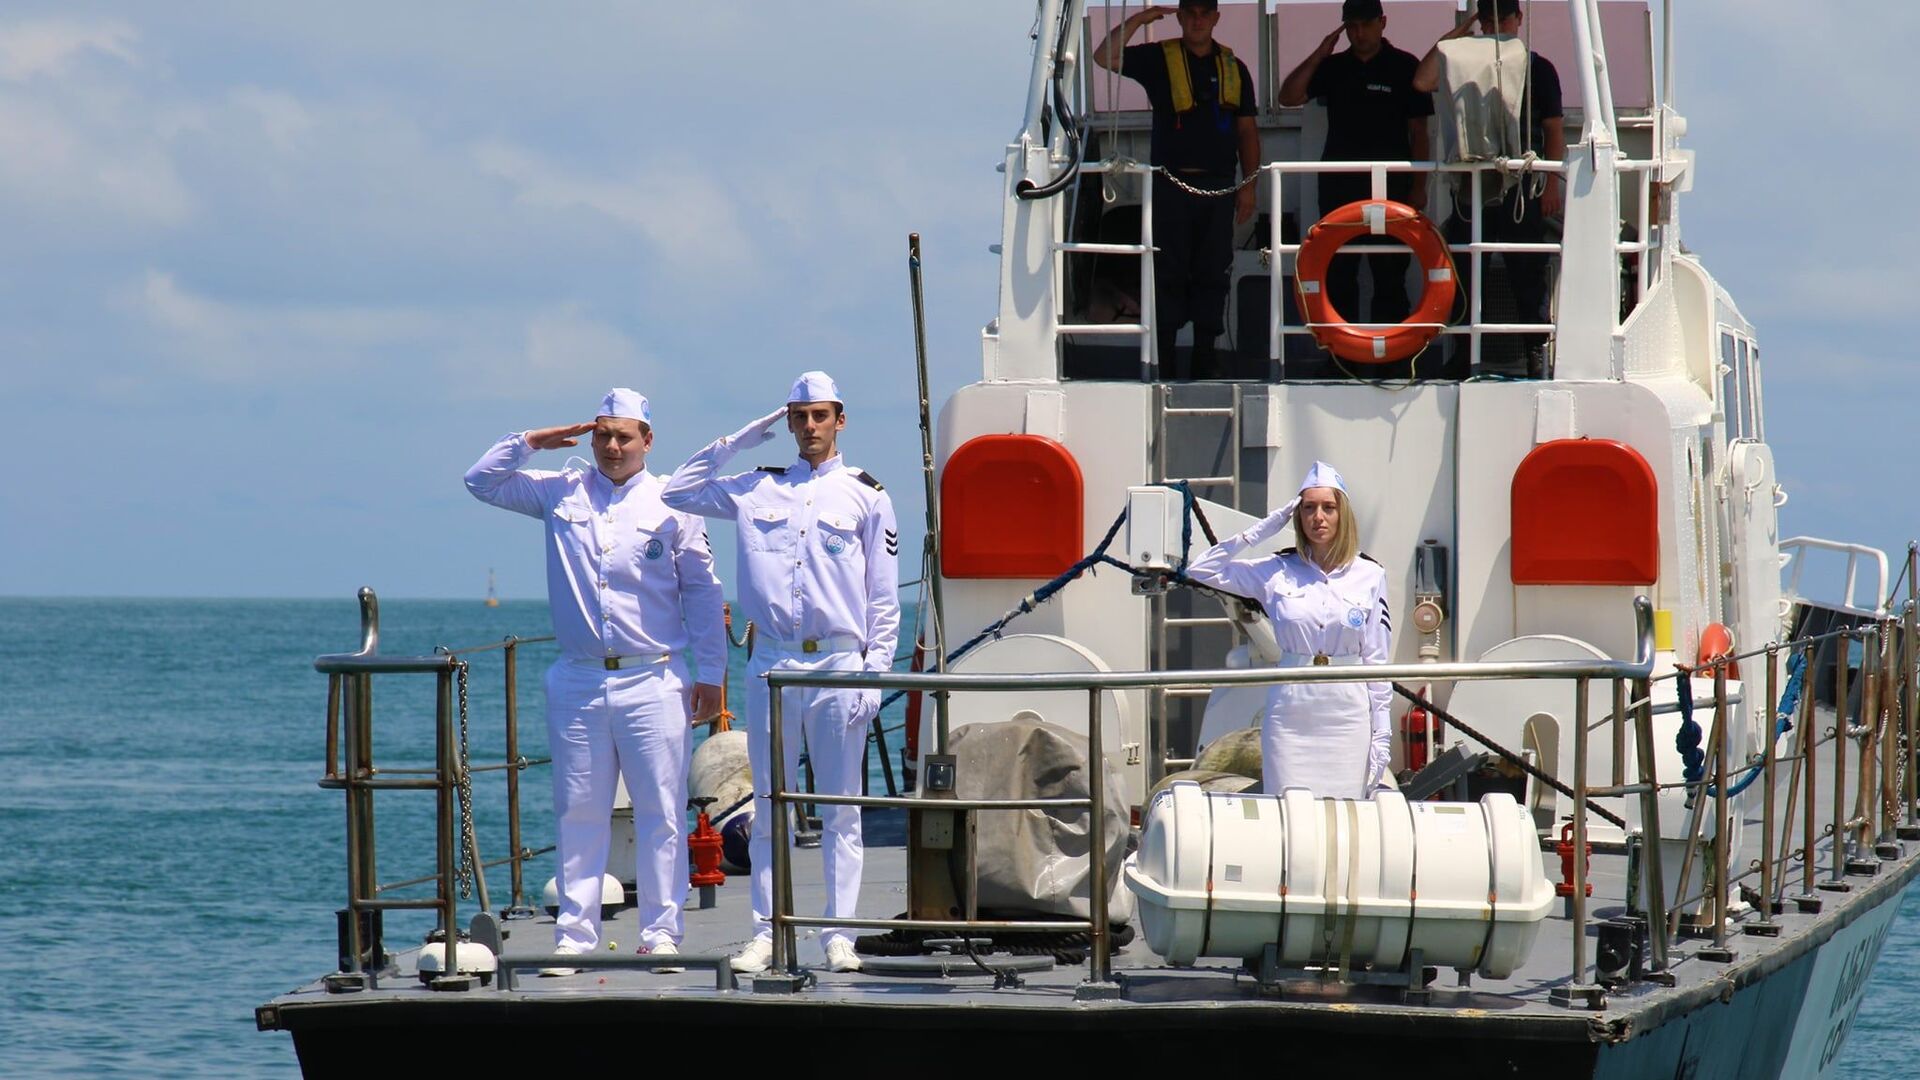 День моряка отмечают в Батуми 26 июня 2021 года - Sputnik Грузия, 1920, 26.06.2021